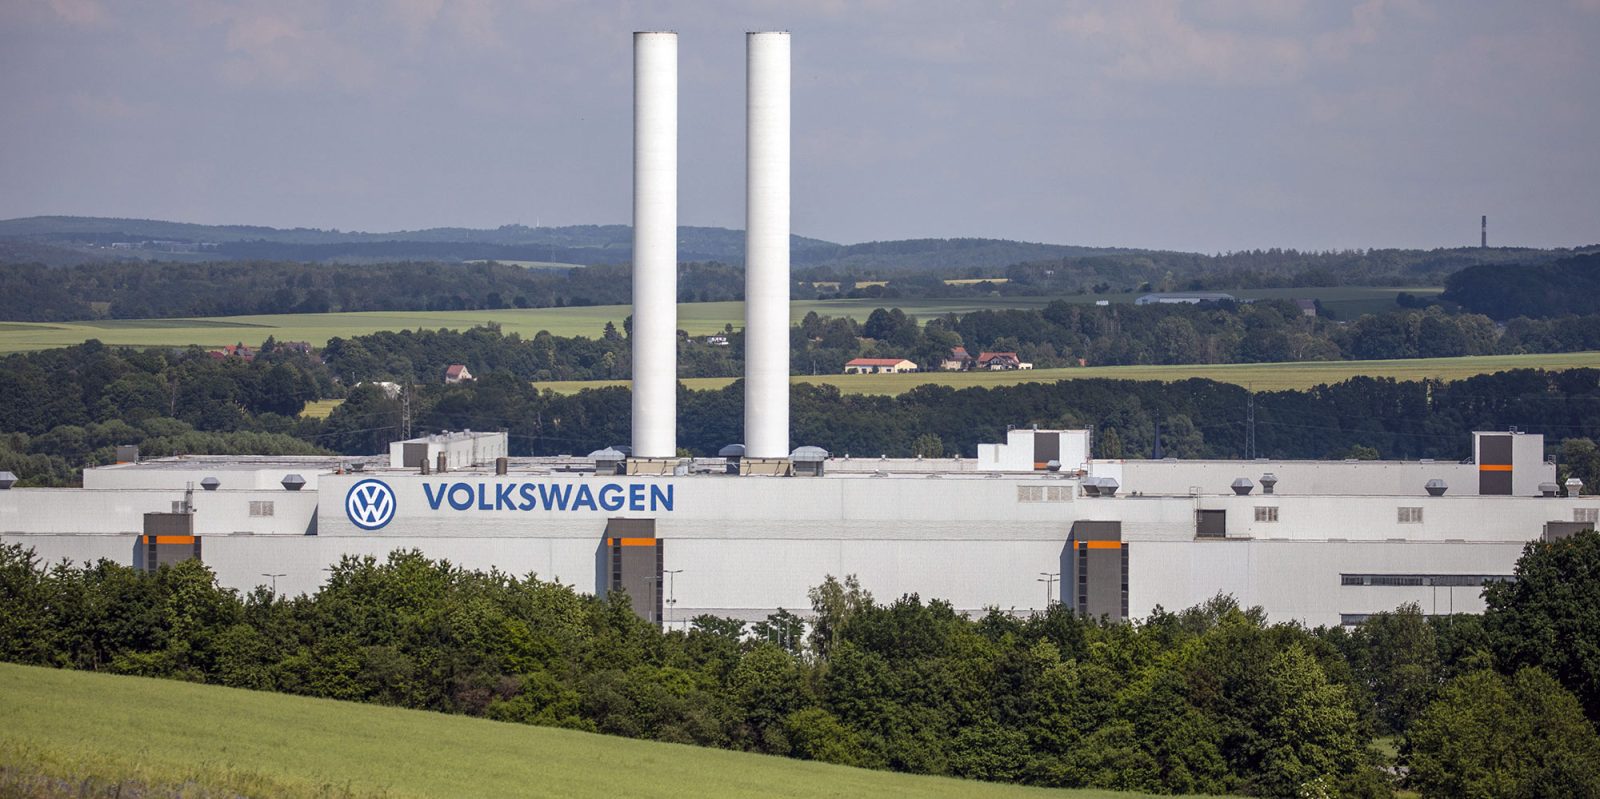 VW plant in Zwickau, Germany